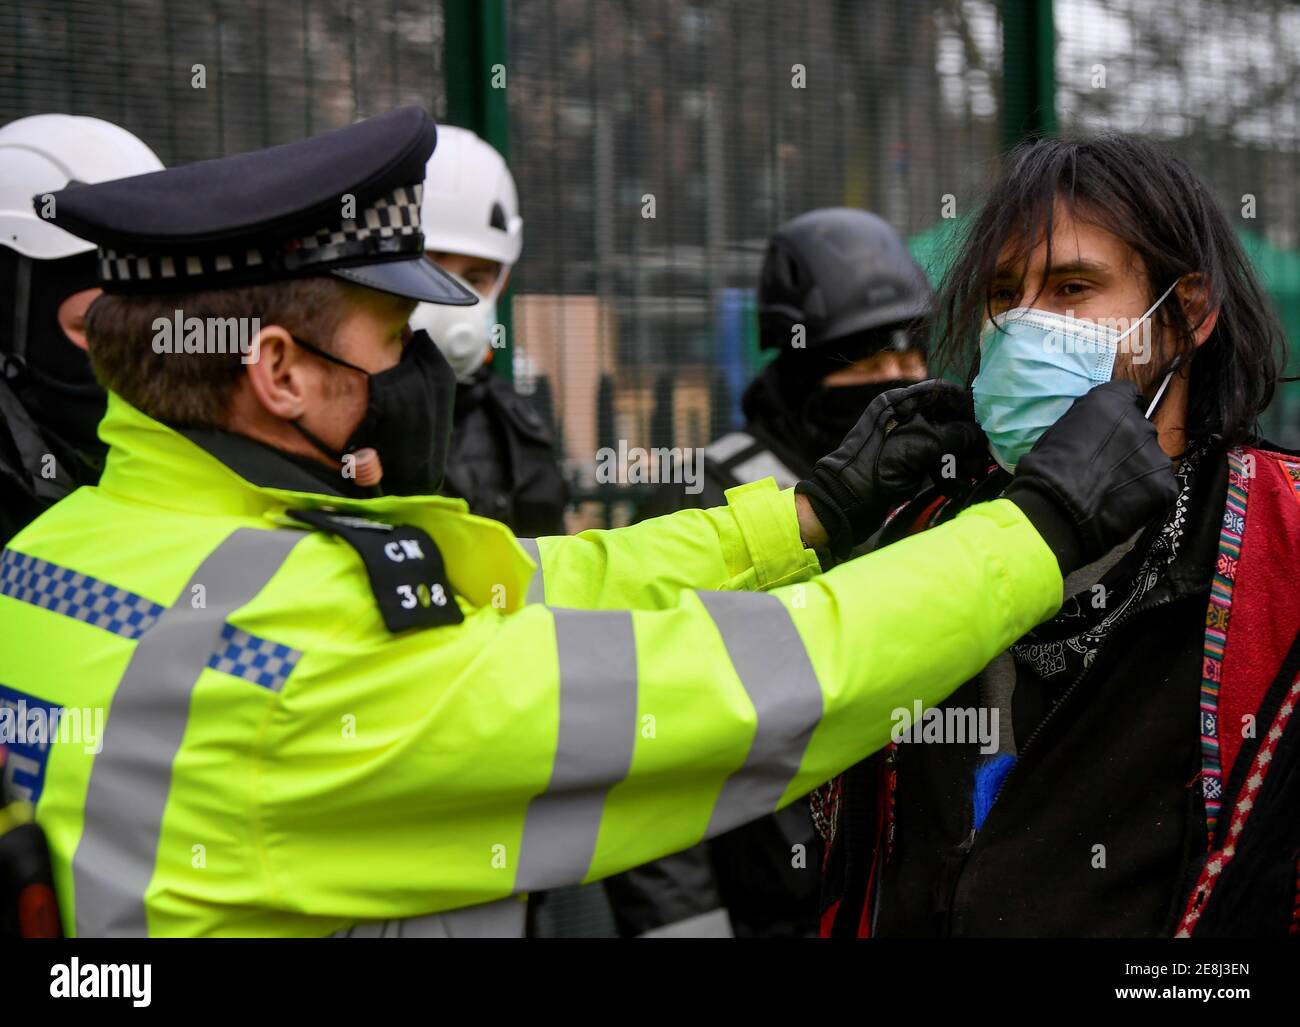 Un oficial de policía ajusta una máscara protectora a un manifestante mientras está detenido, ya que otros manifestantes ocupan túneles bajo Euston Square Gardens para protestar contra el ferrocarril de alta velocidad HS2 en Londres, Gran Bretaña, el 31 de enero de 2021. REUTERS/Toby Melville Foto de stock